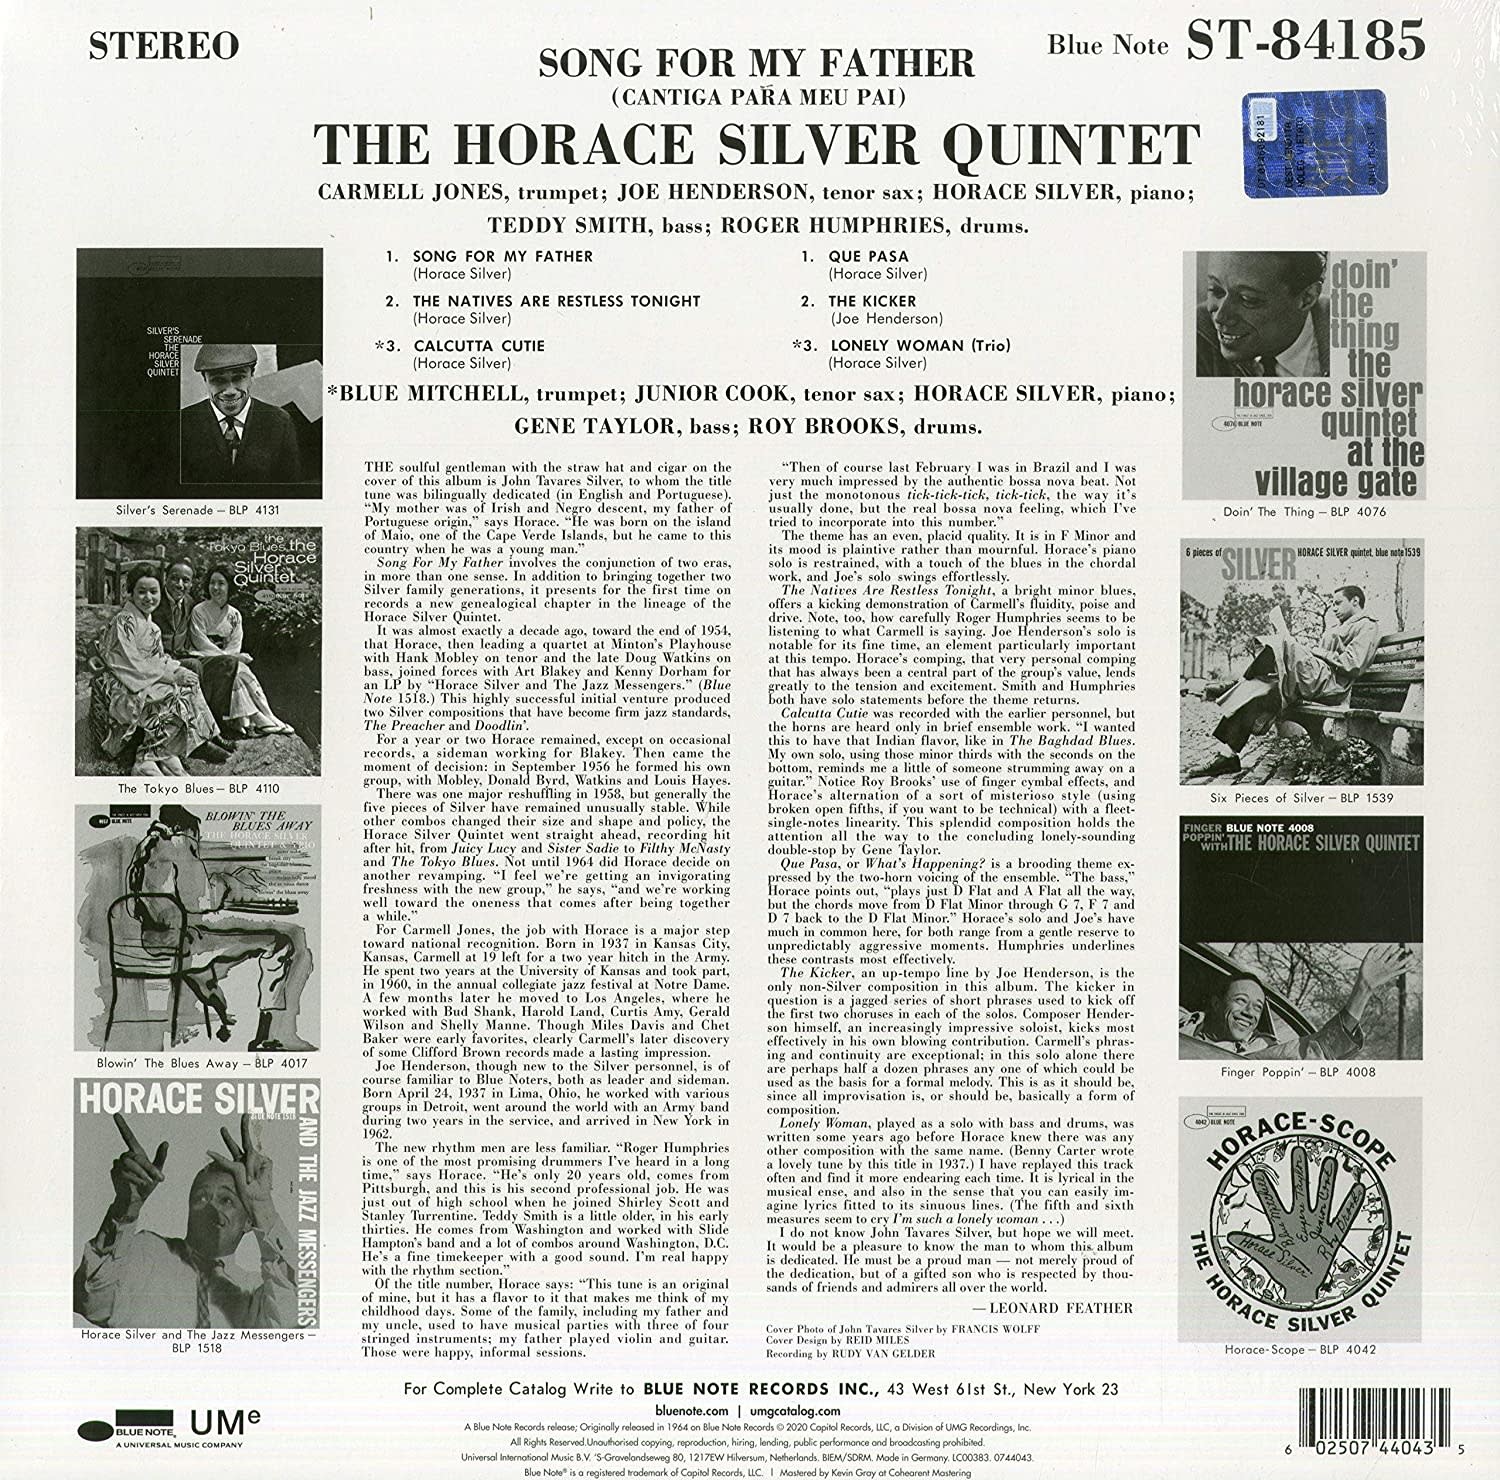 Horace Silver Quintet – Song For My Father (Cantiga Para Meu Pai)